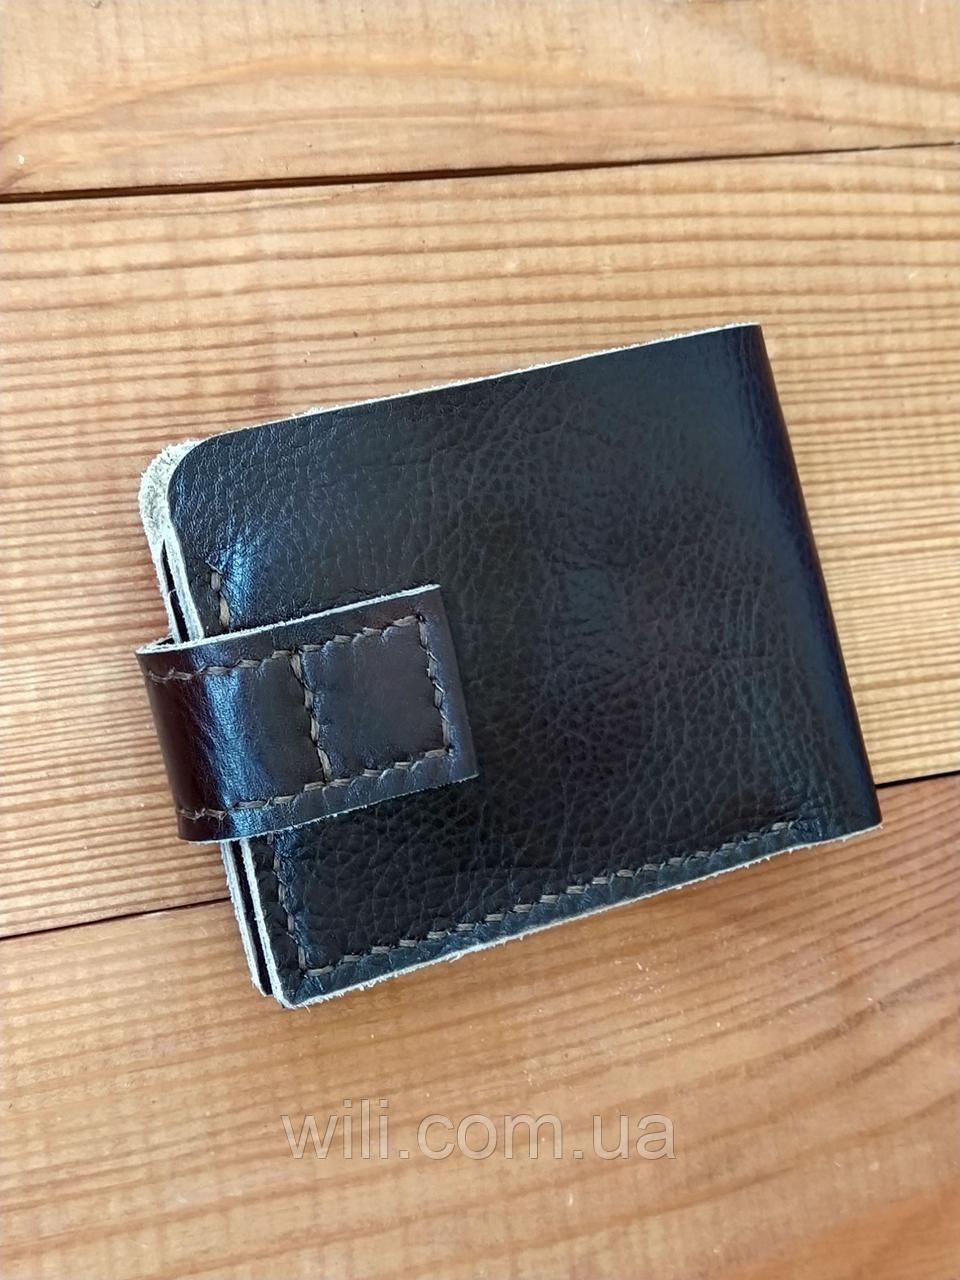 Класичний чоловічий гаманець з натуральної шкіри "Art classic"